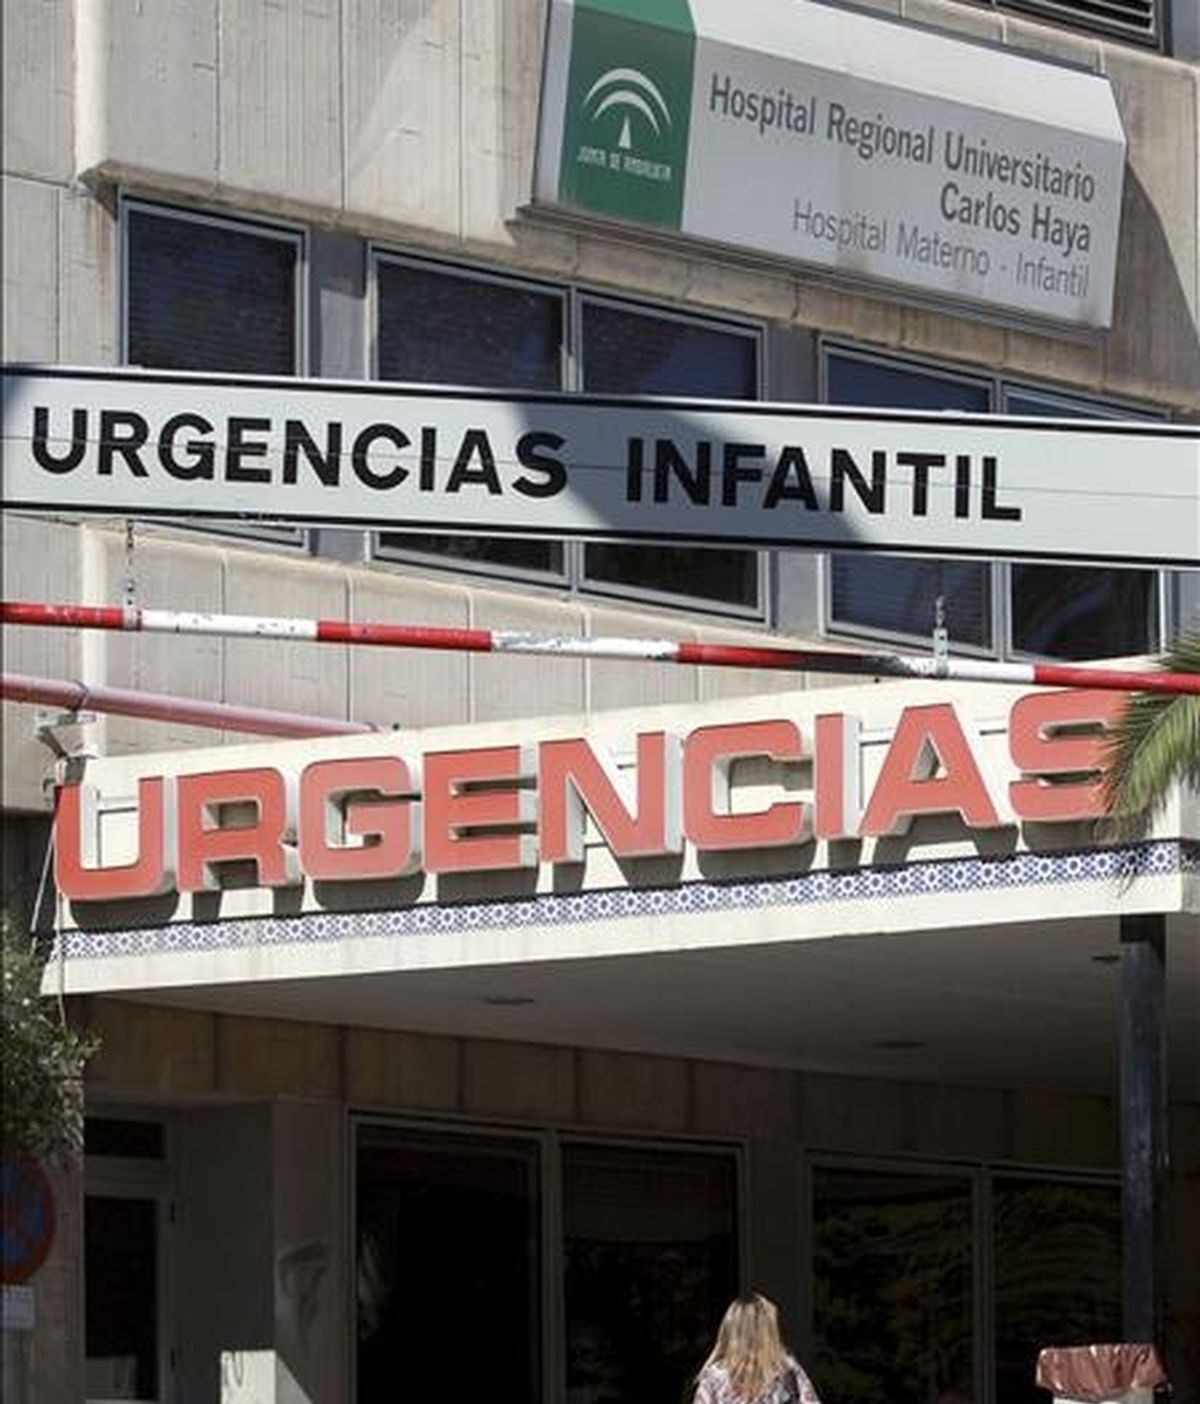 Una mujer accede al Hospital Materno Infantil, perteneciente al Hospital Regional Universitario Carlos Haya, donde permanece ingresado el bebé. EFE/Archivo